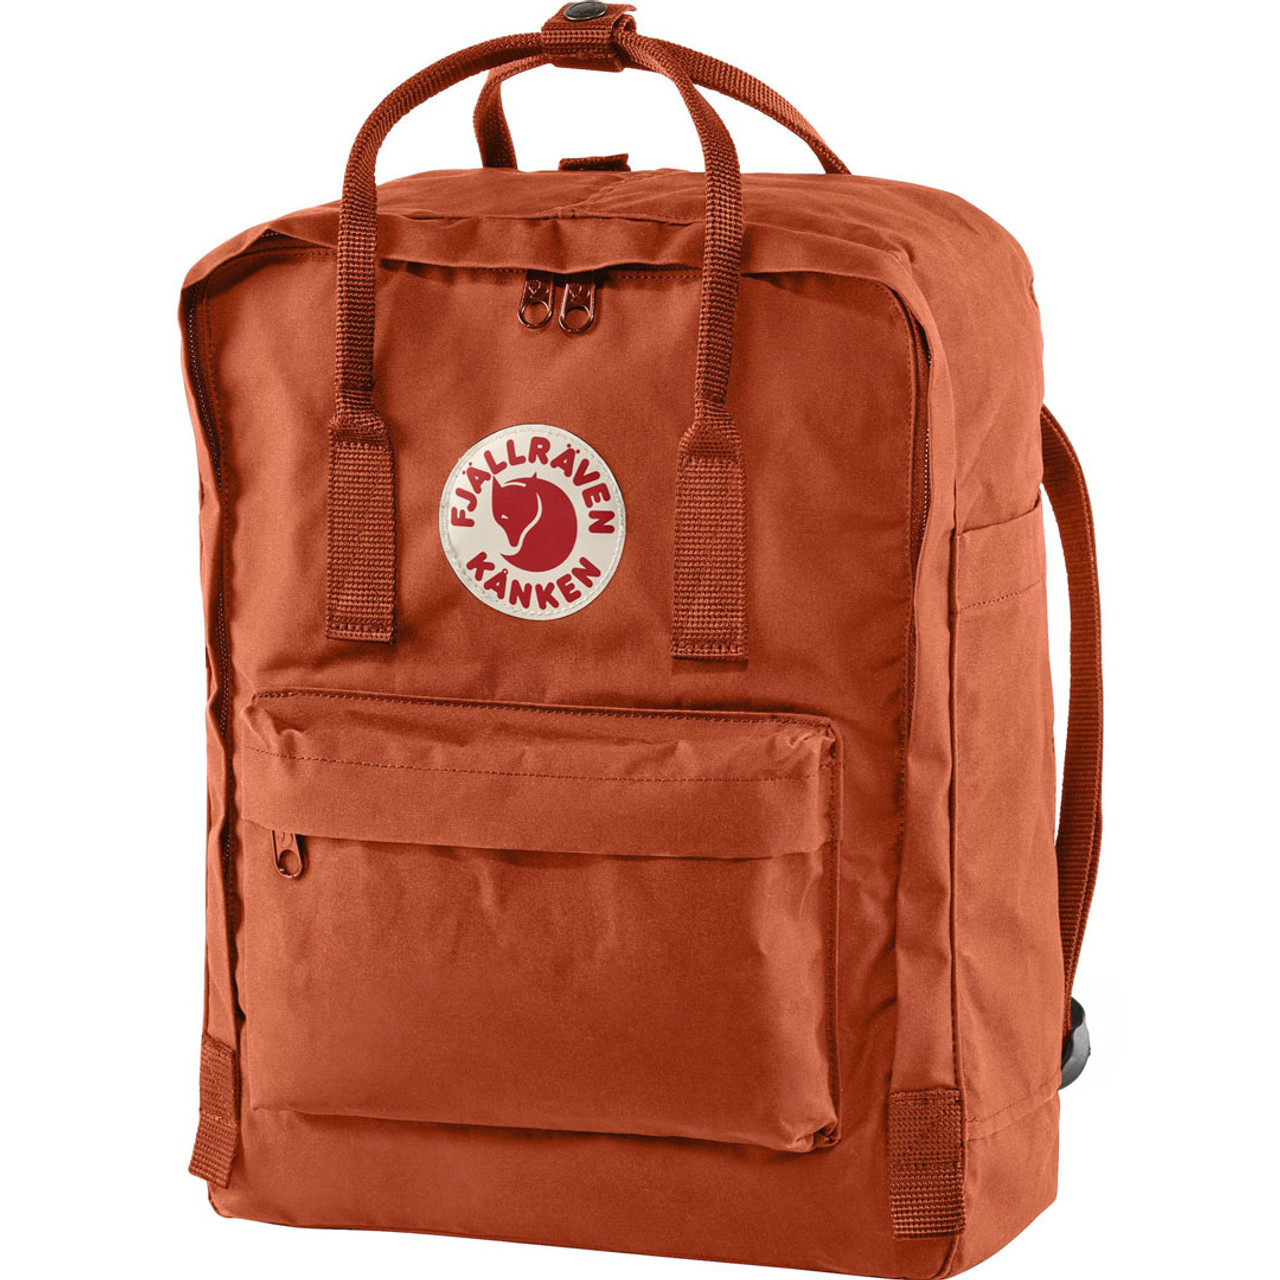 Versterken Isoleren erfgoed Fjallraven Kanken Backpack - Rowan Red $ 79.99 | TYLER'S